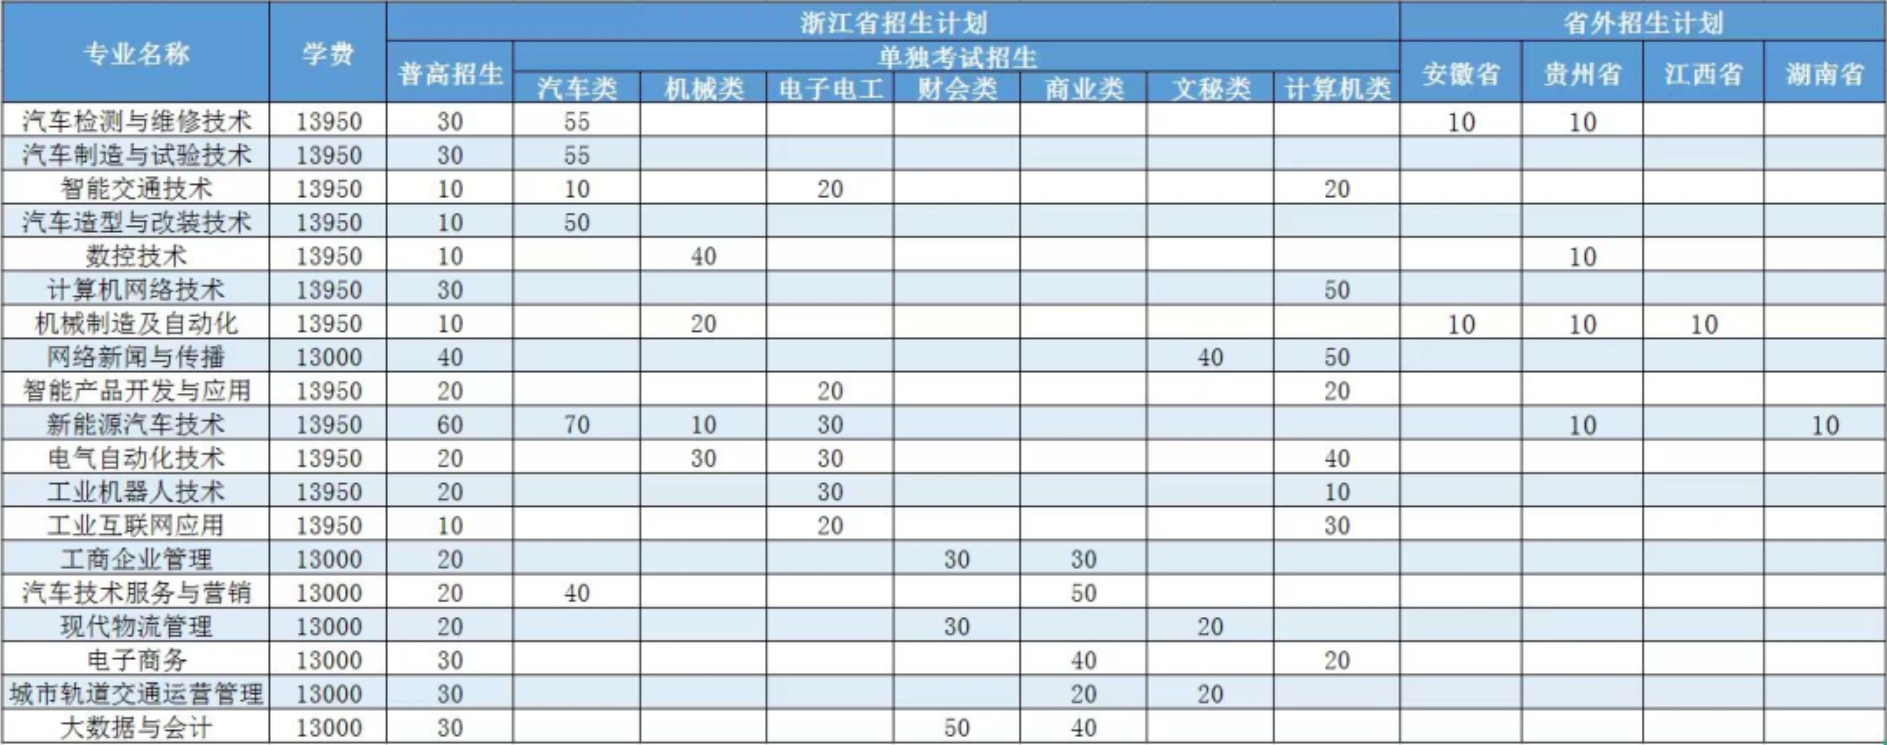 浙江汽车职业技术学院招生计划-各专业招生人数是多少